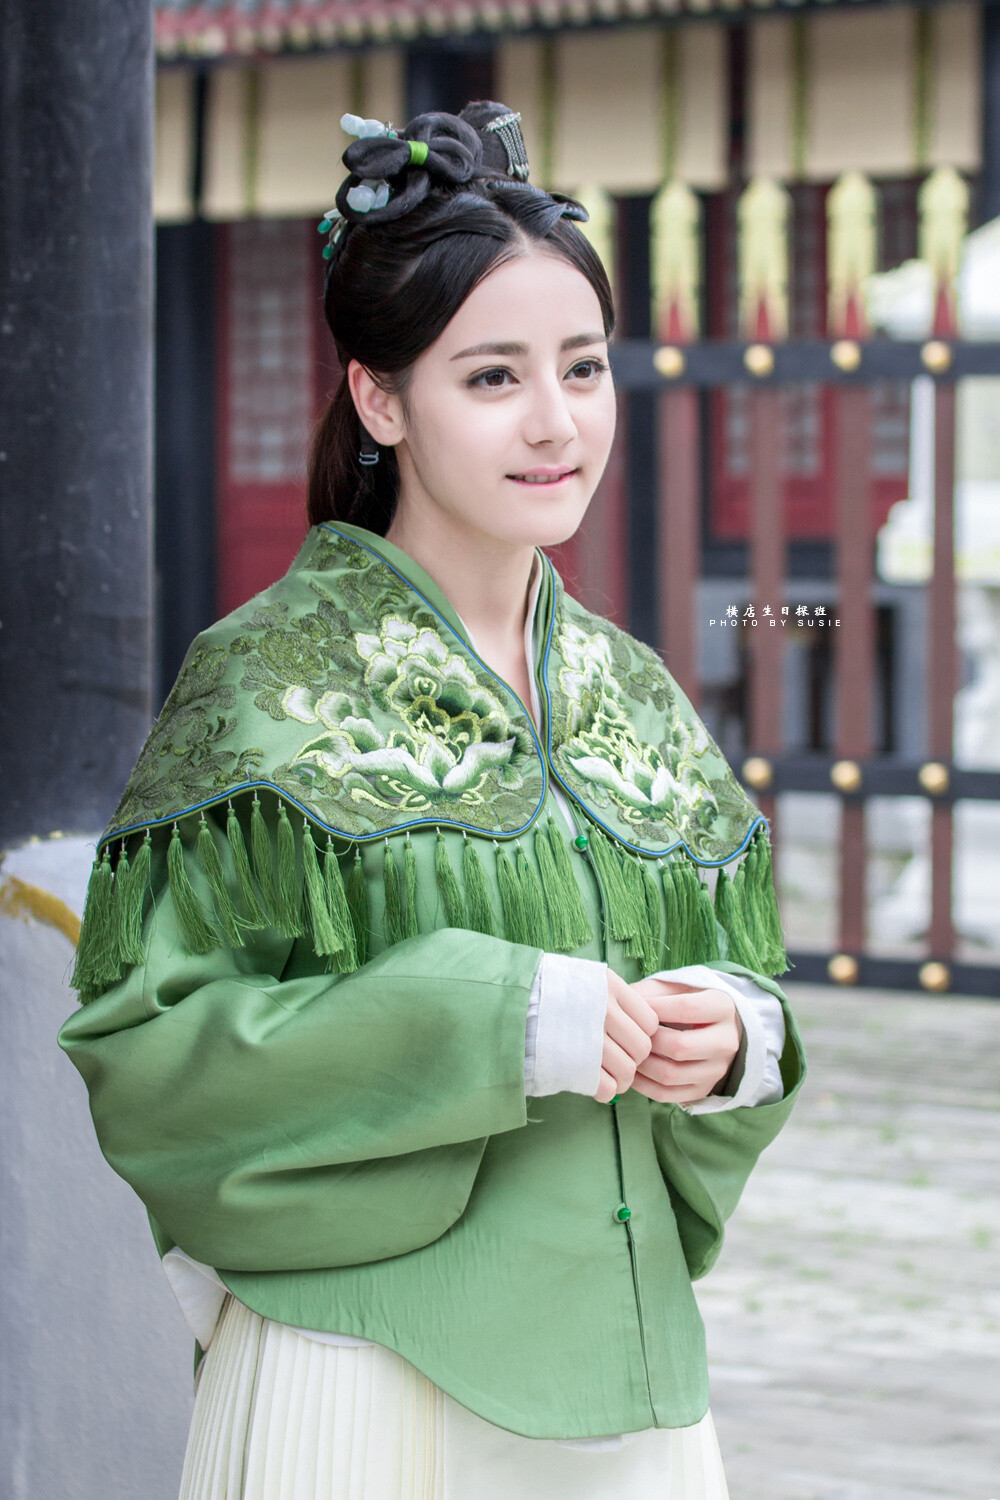 迪丽热巴，1992年06月03日出生于乌鲁木齐，中国内地女演员，维吾尔族，毕业于上海戏剧学院。
